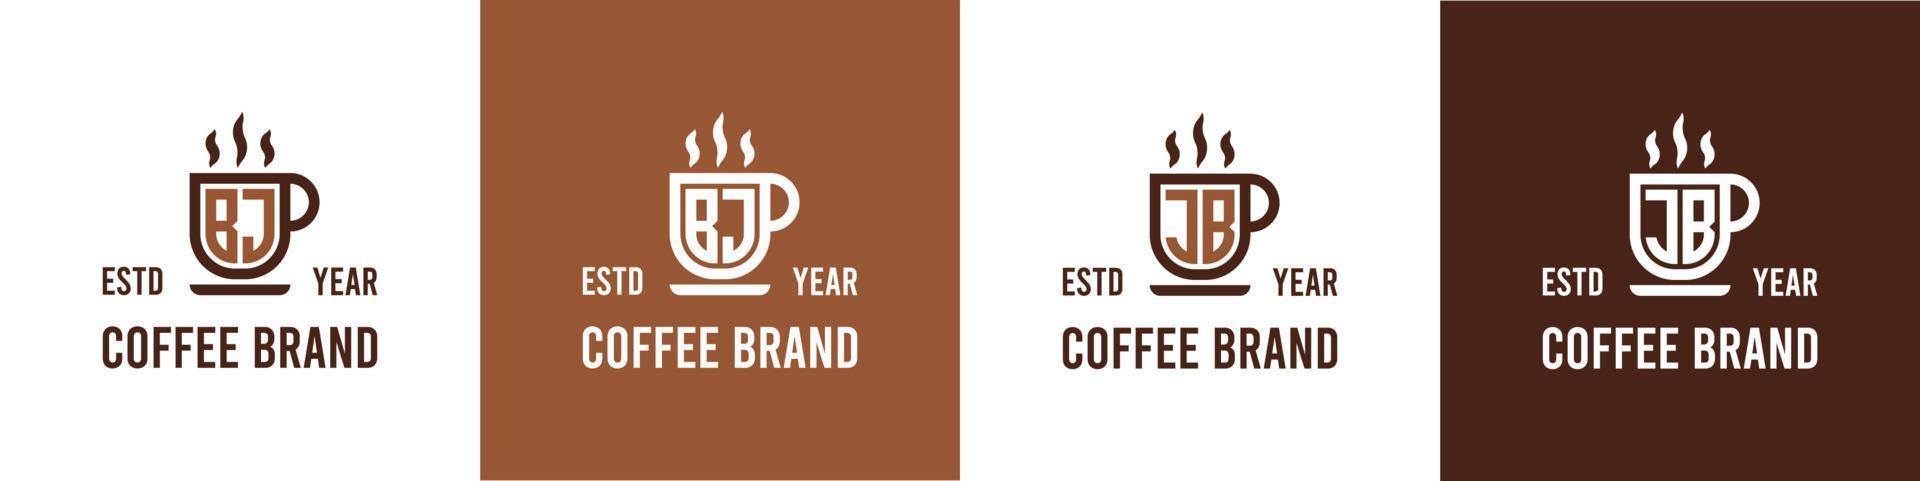 carta bj e jb café logotipo, adequado para qualquer o negócio relacionado para café, chá, ou de outros com bj ou jb iniciais. vetor